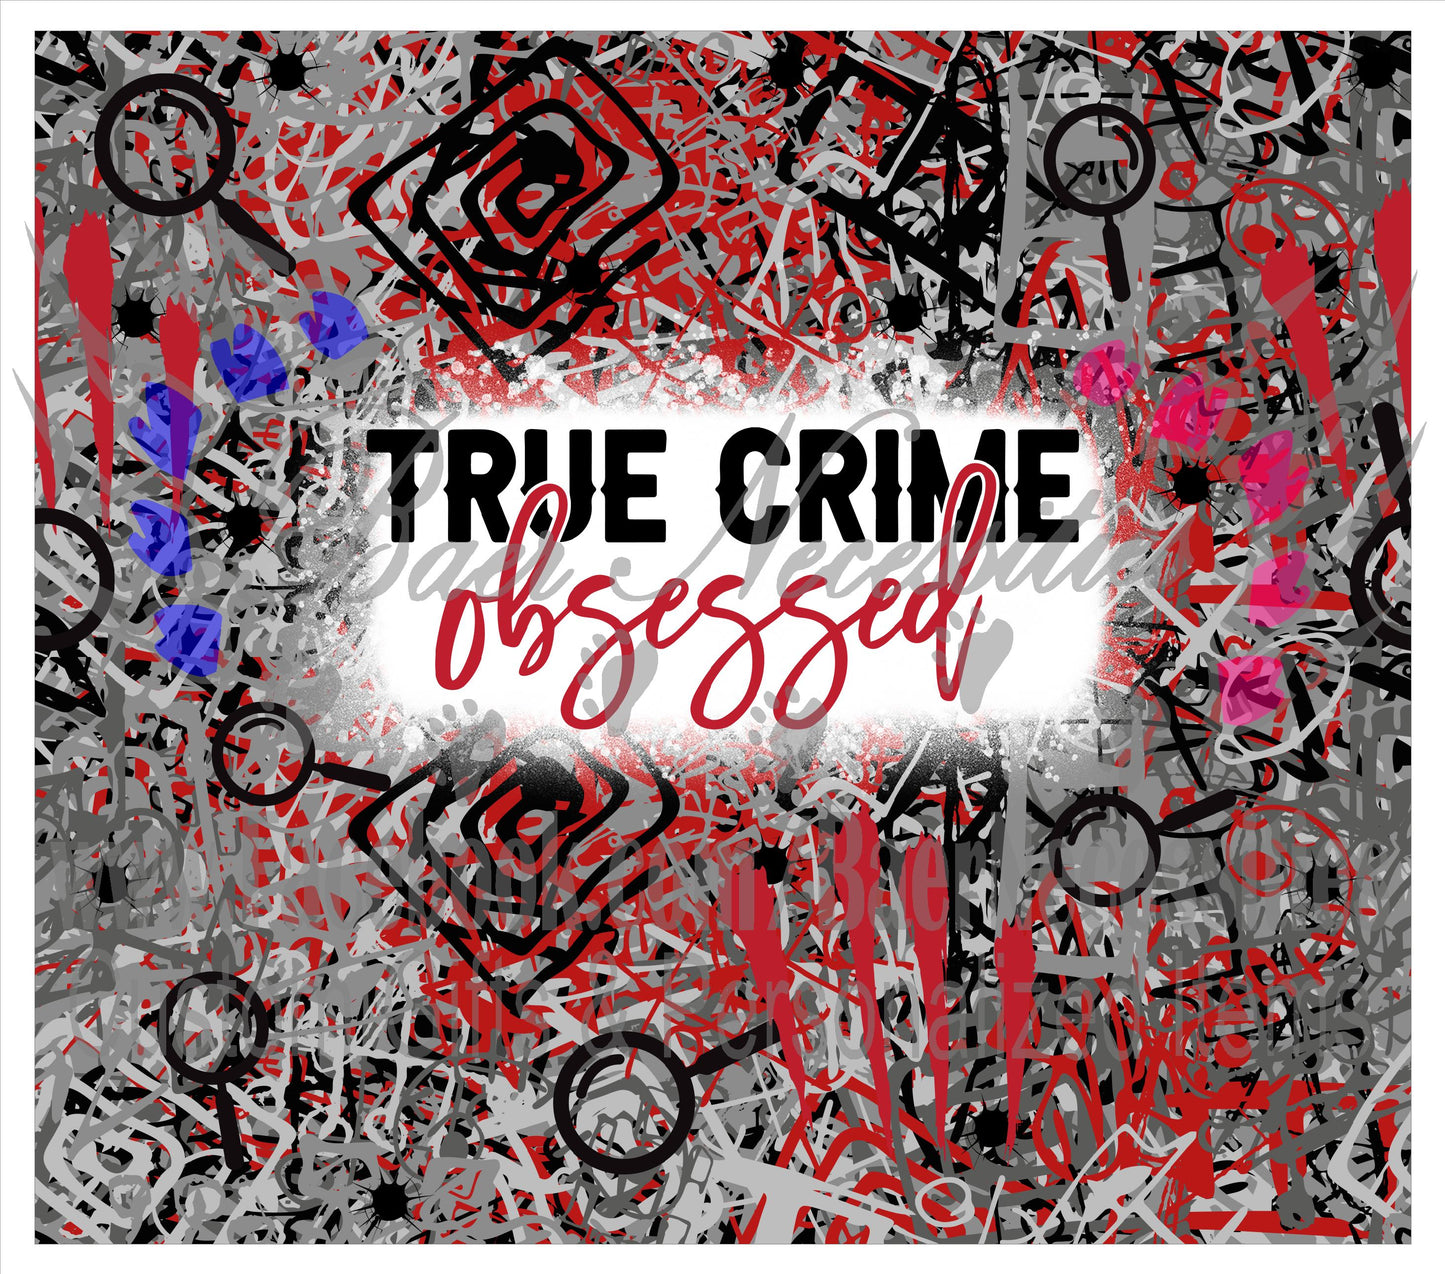 True Crime Obsessed - Tumbler Transfer